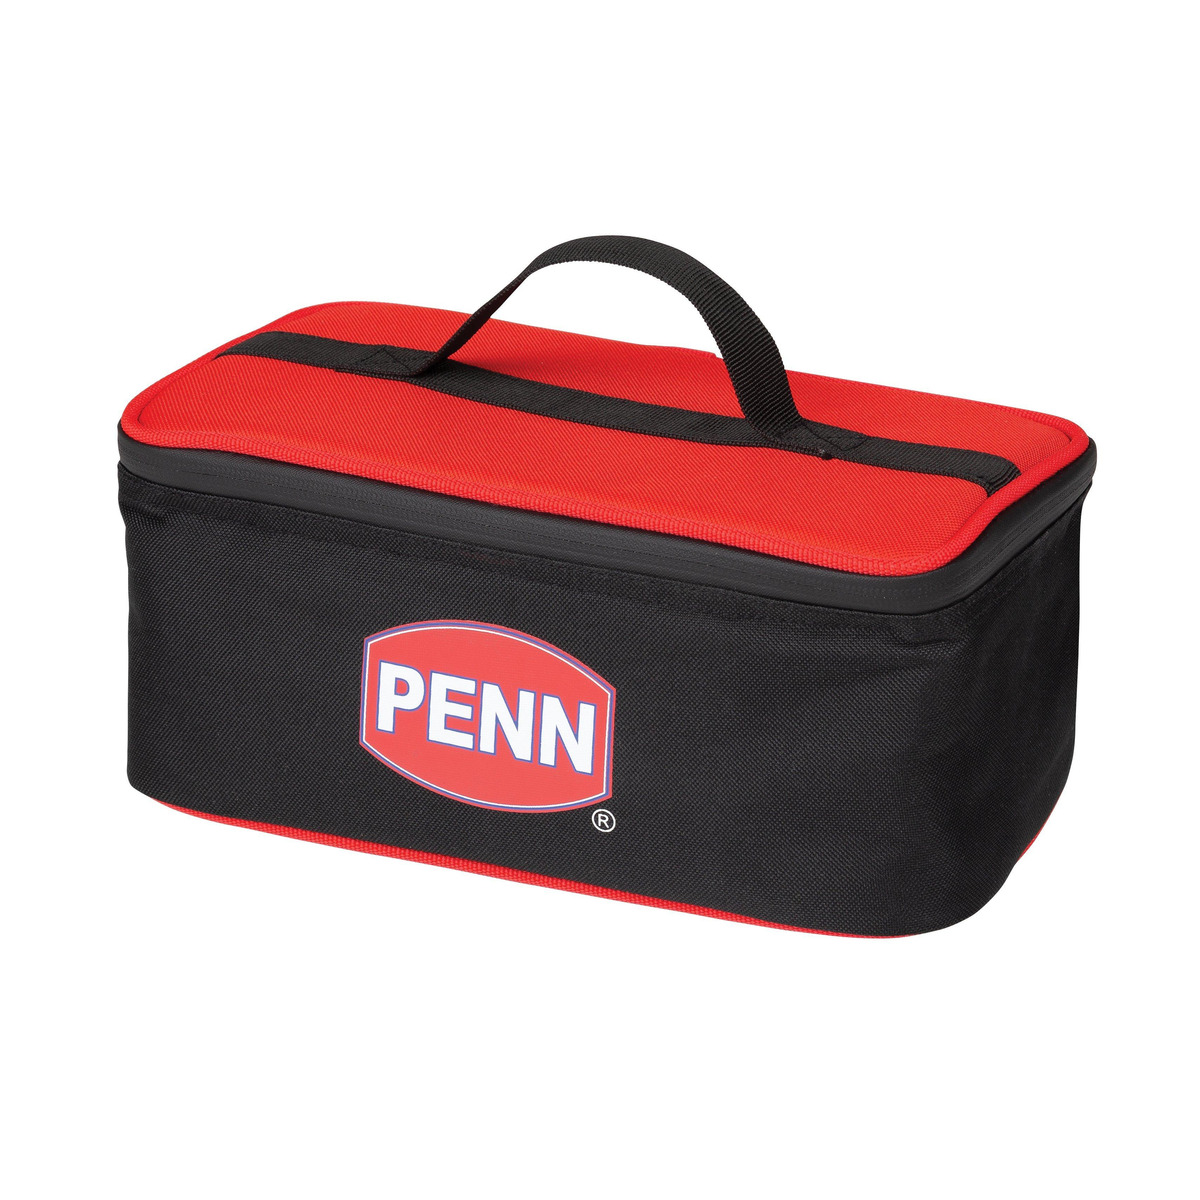 Penn Cool Bag - L